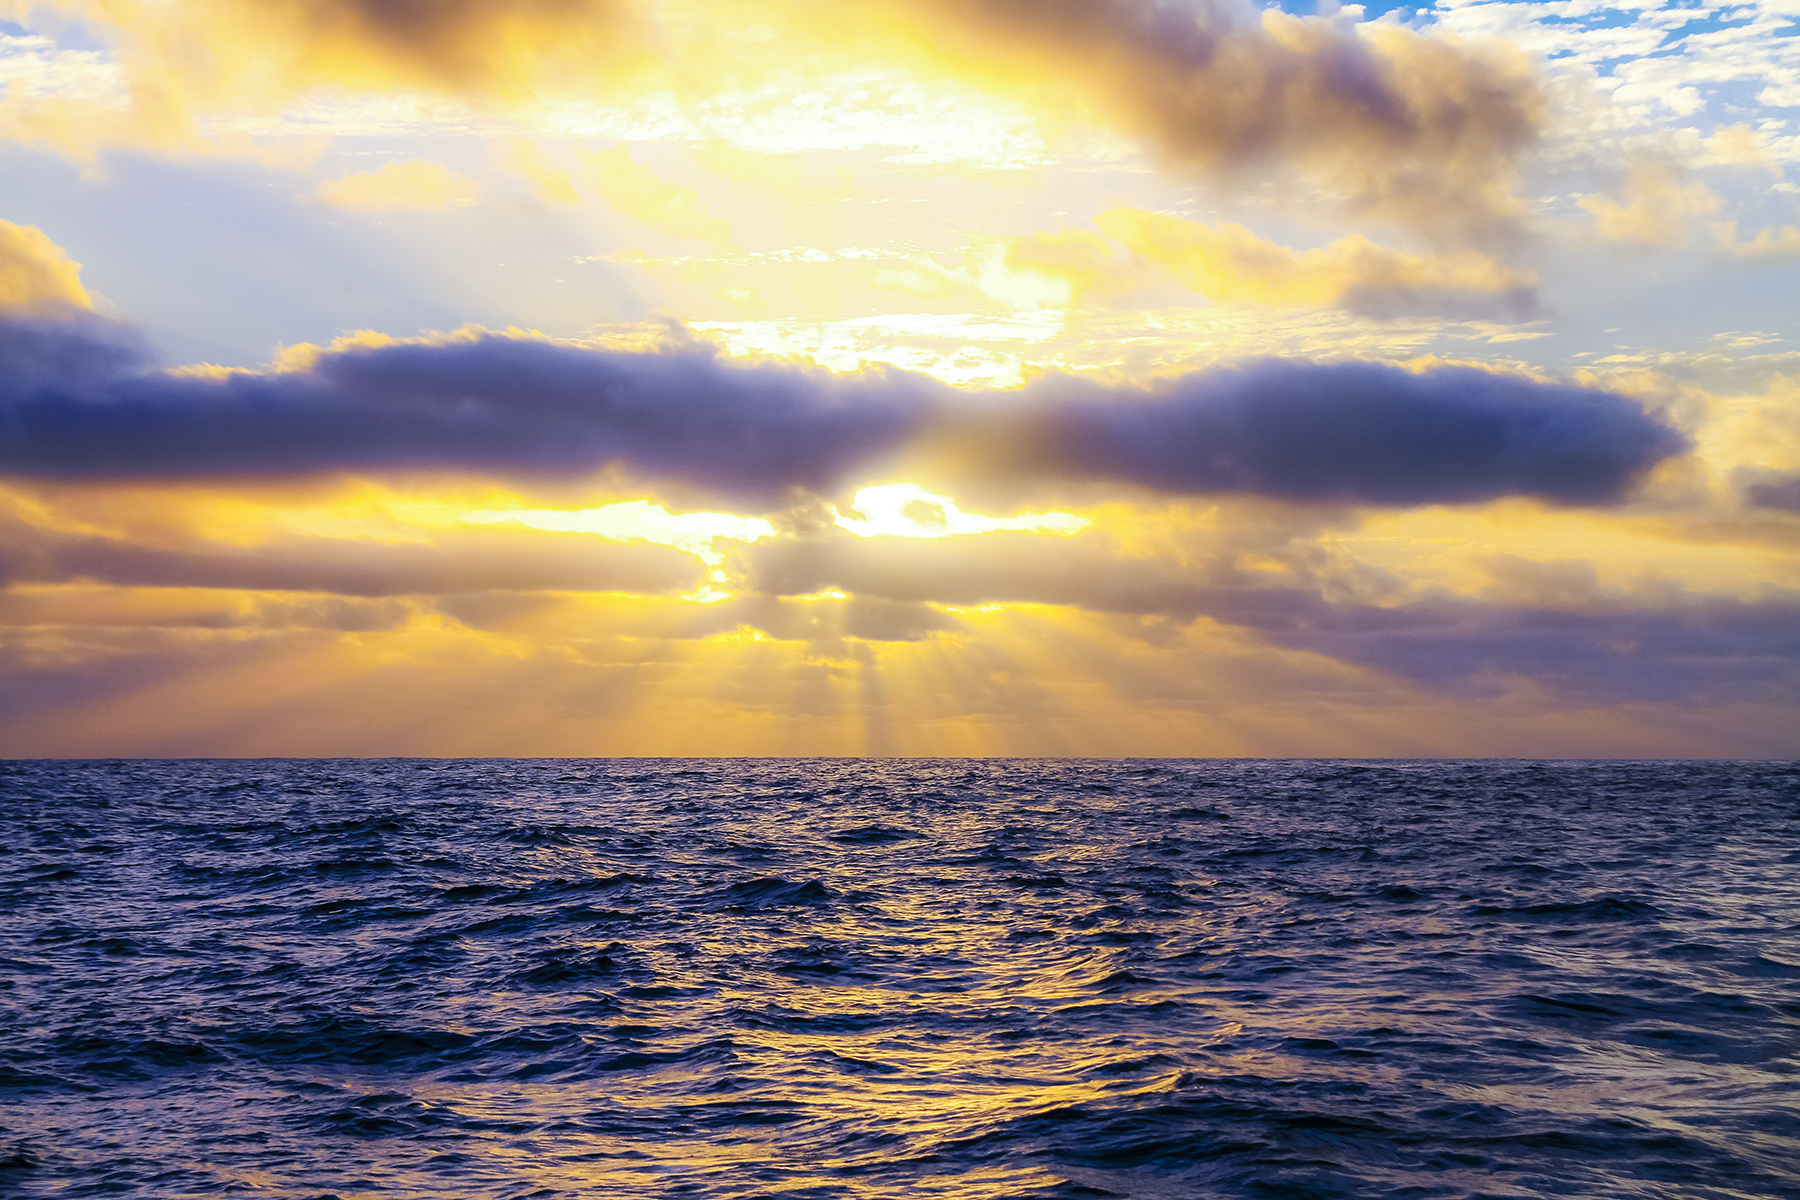 Sunset in an open ocean crossing